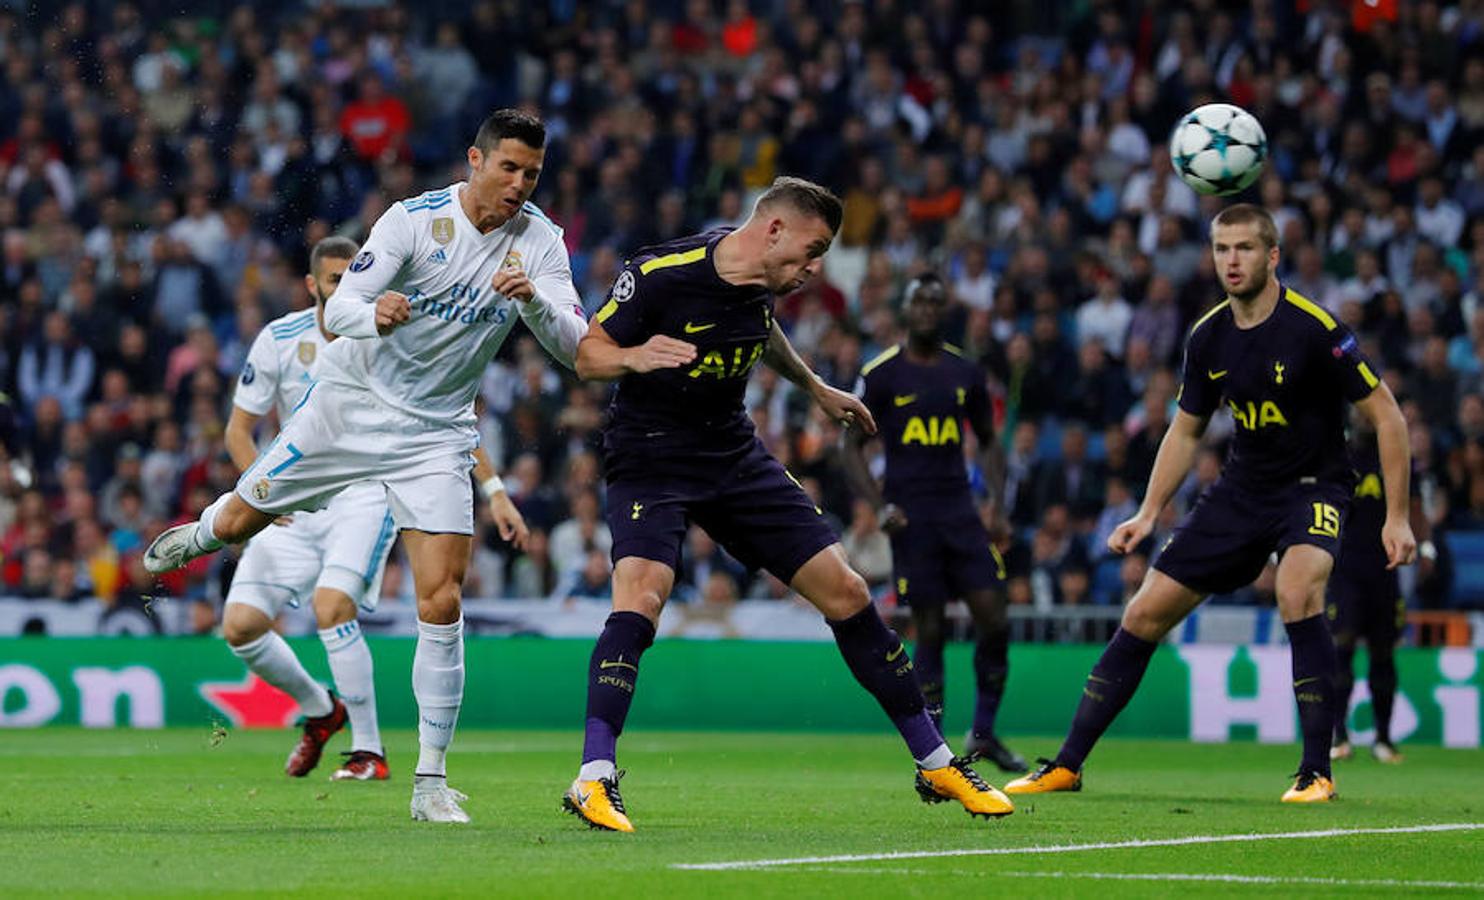 El Real Madrid se midió al Tottenham, que nunca había marcado un gol en sus duelos anteriores pero esta vez sí fue capaz de anotar en la meta madridista.